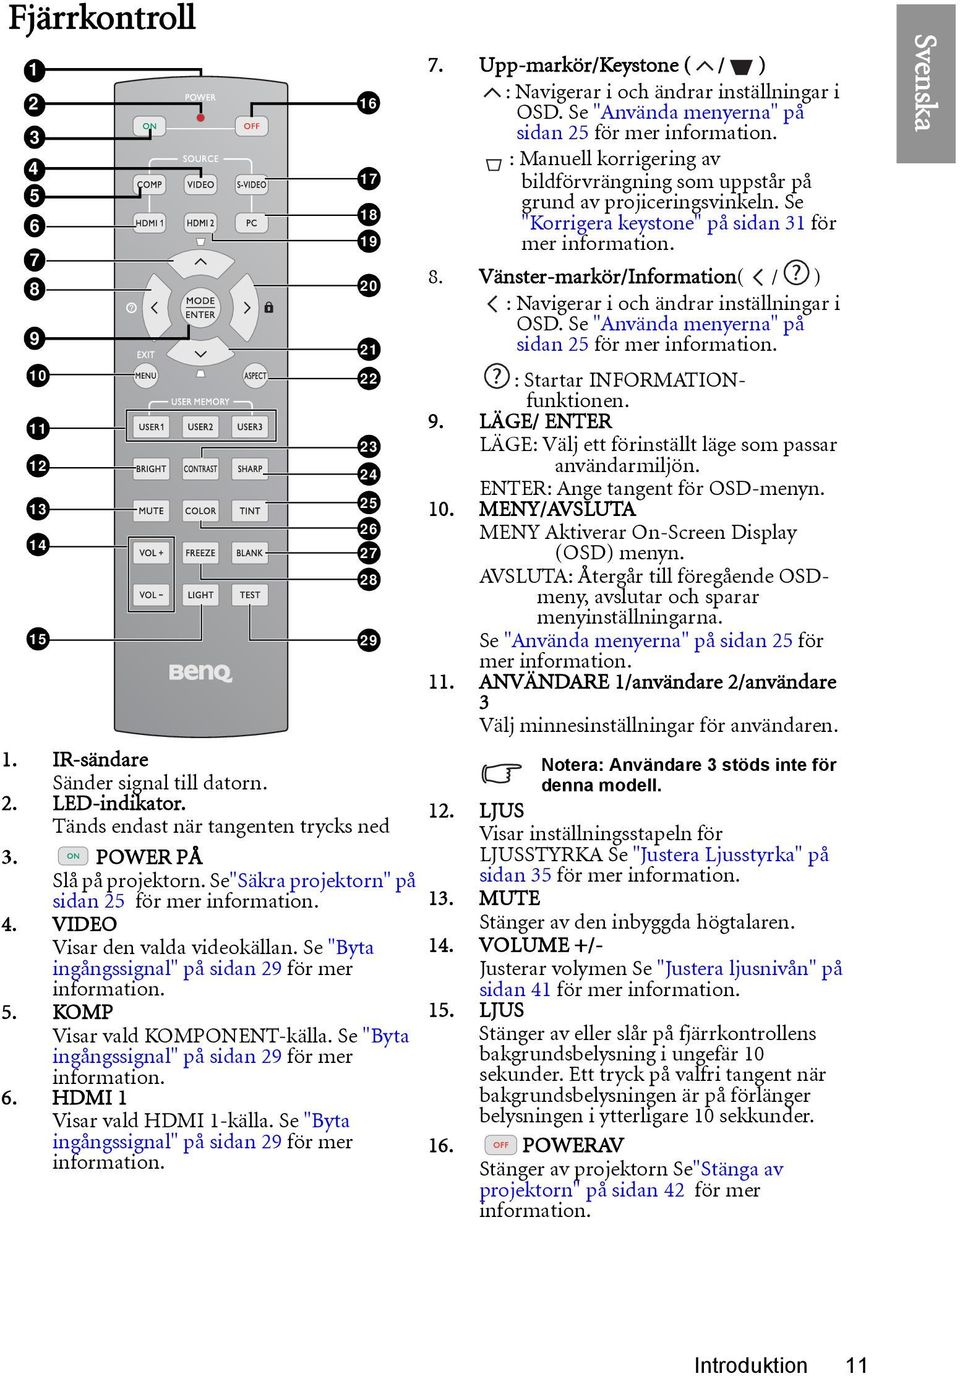 Se "Byta ingångssignal" på sidan 29 för mer information. 6. HDMI 1 Visar vald HDMI 1-källa. Se "Byta ingångssignal" på sidan 29 för mer information. 16 17 18 19 20 21 22 23 24 25 26 27 28 29 7.